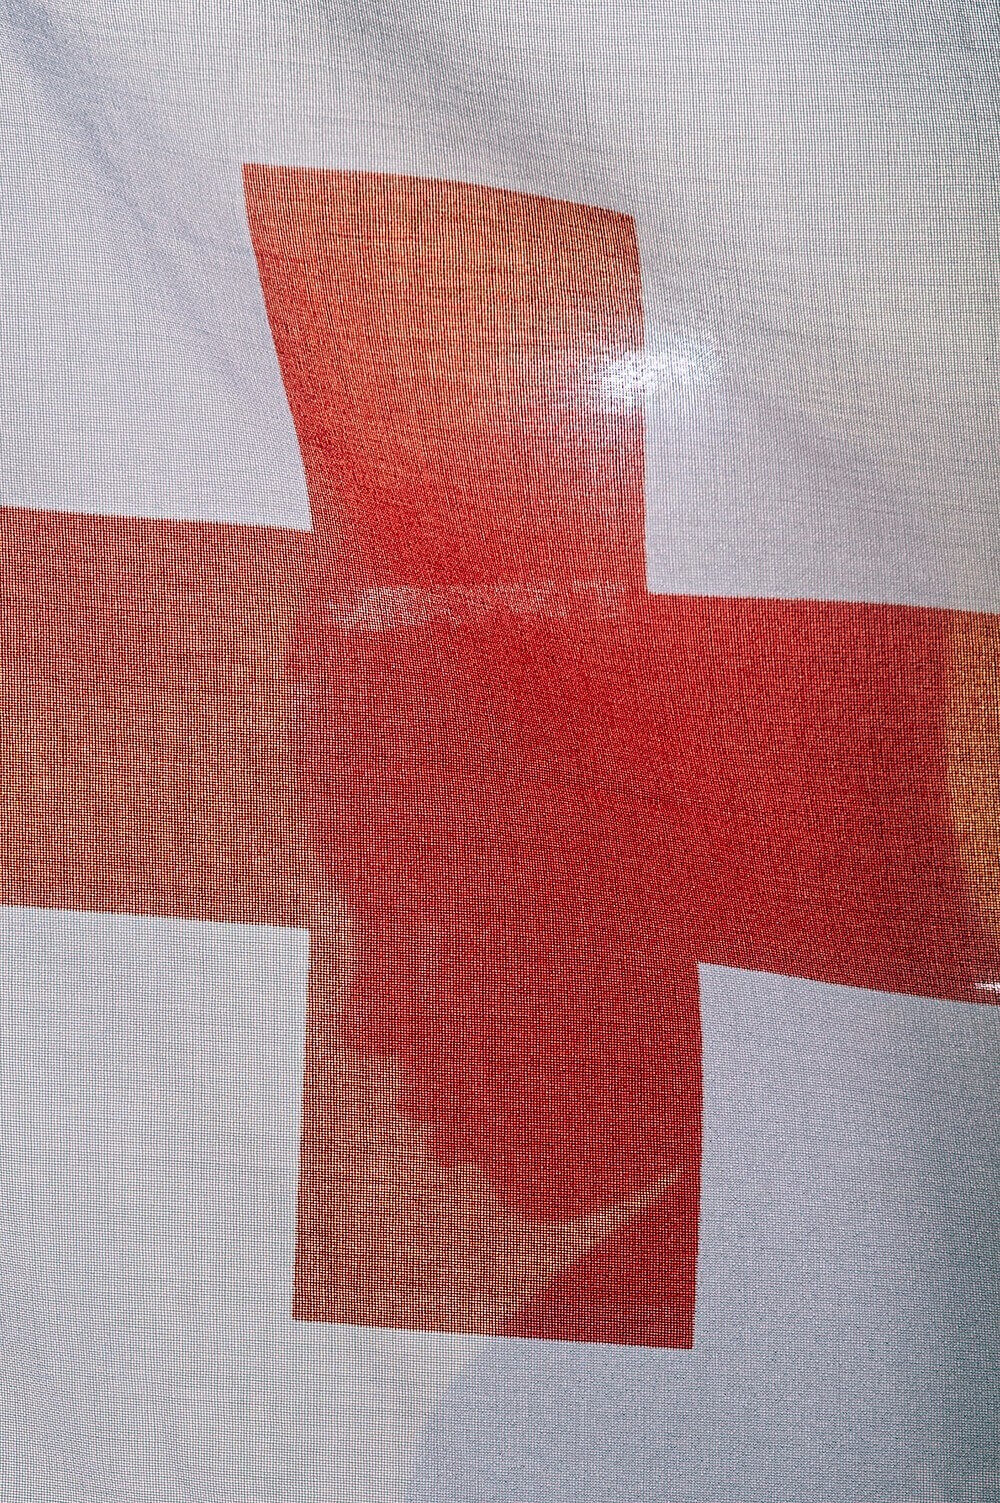 1. «Люди за Красным Крестом» из серии «Связанные тенями», автор Джонатан Бэнкс